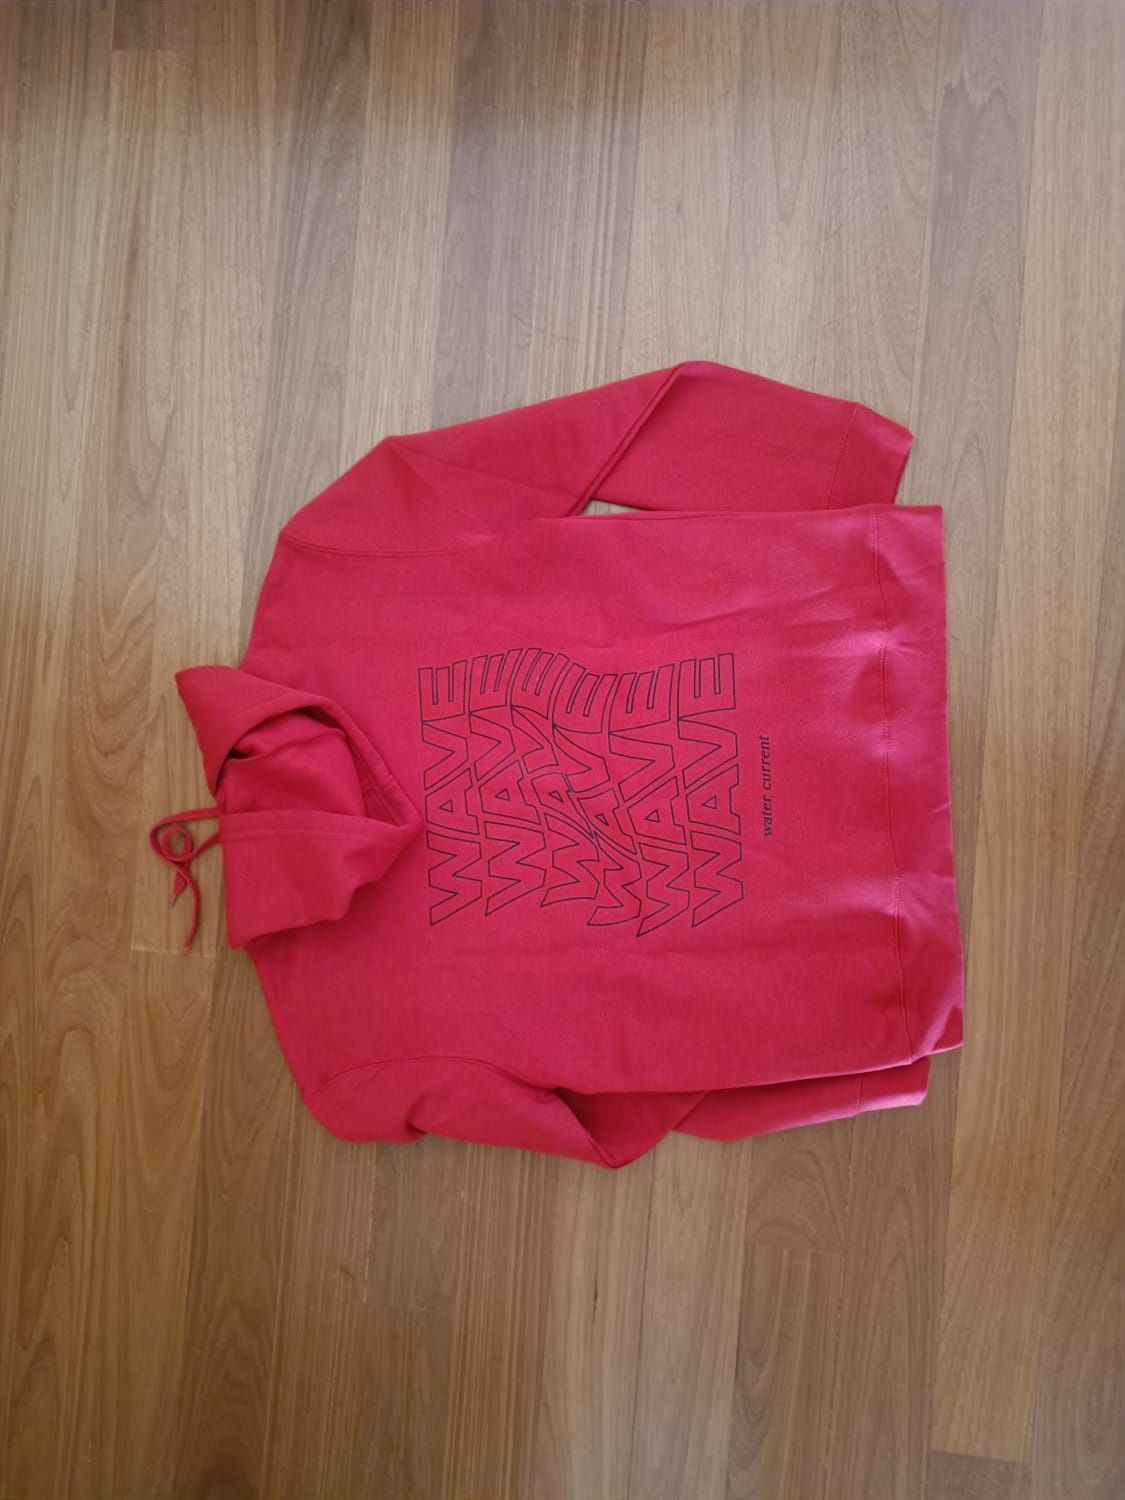 Camisola vermelha da marca waveconservelife